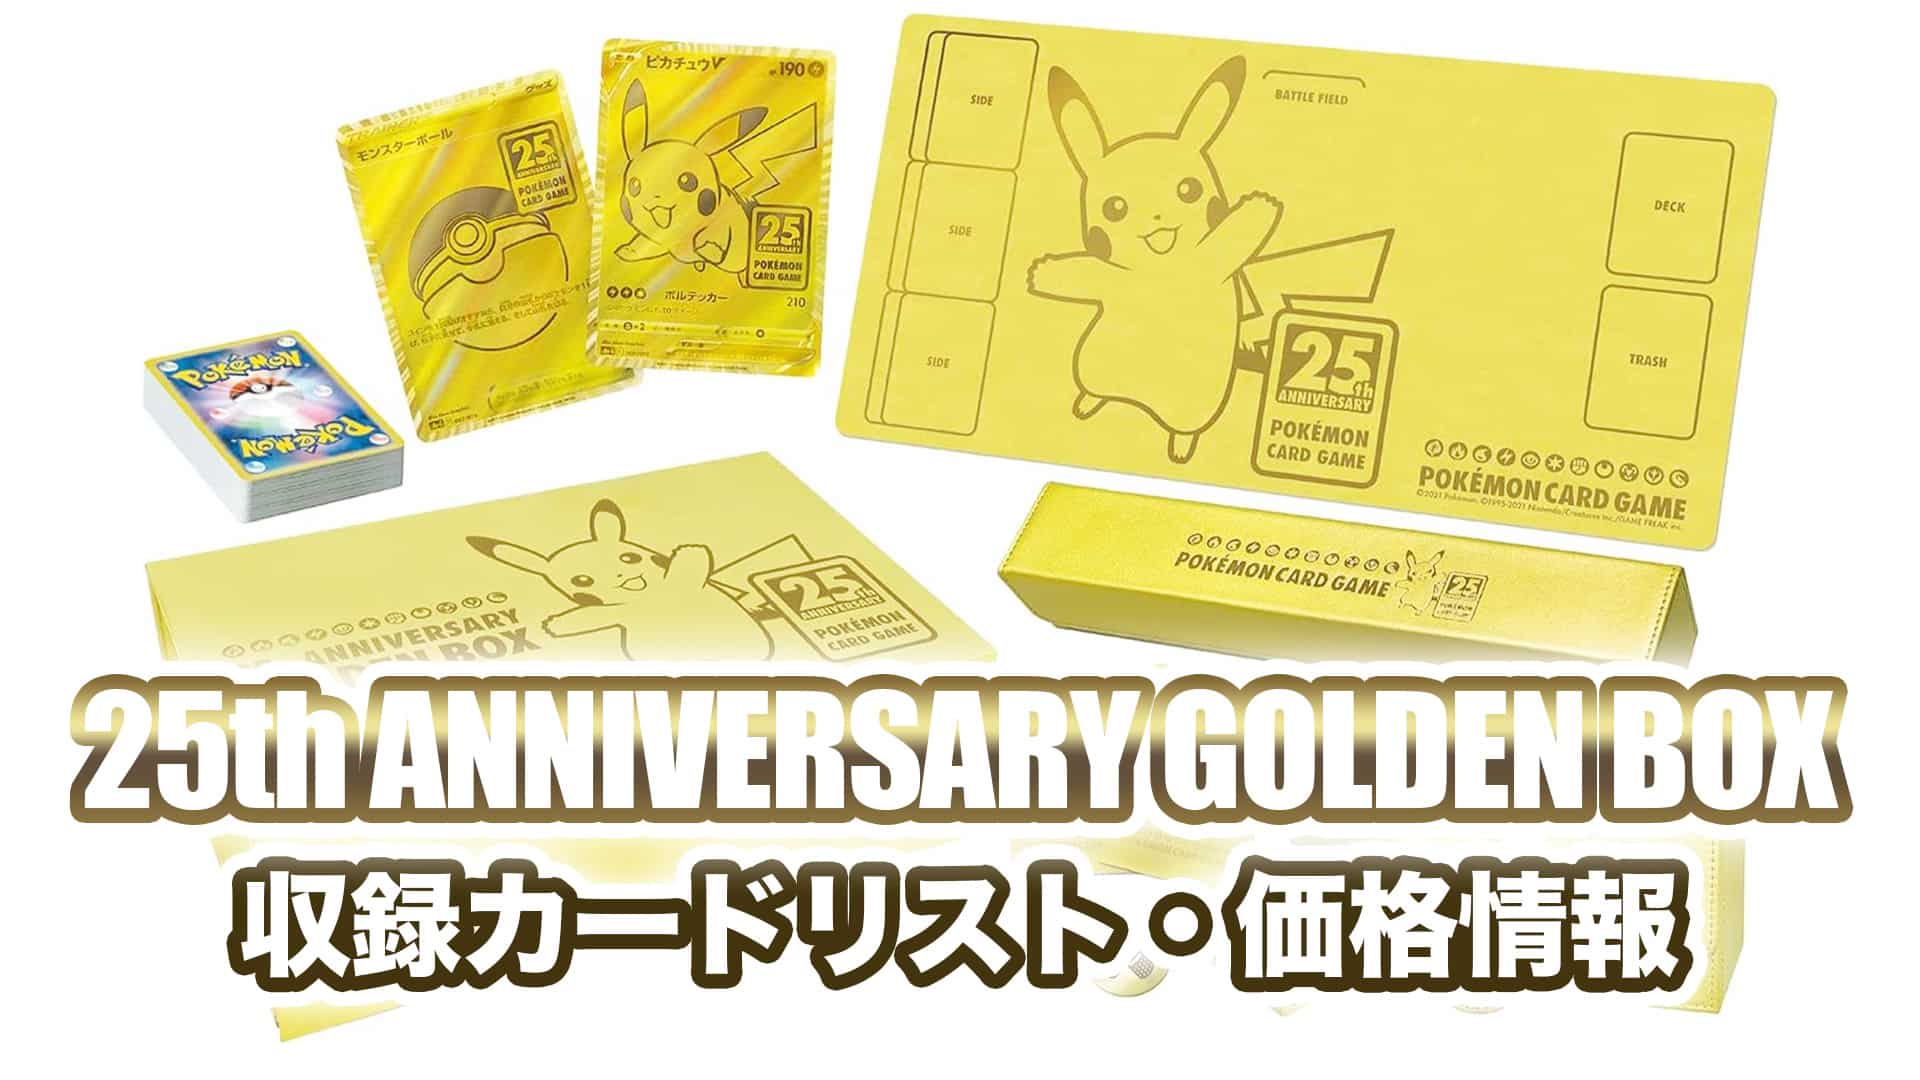 25th anniversary golden box プロモのみ抜き取り ポケモンカード 